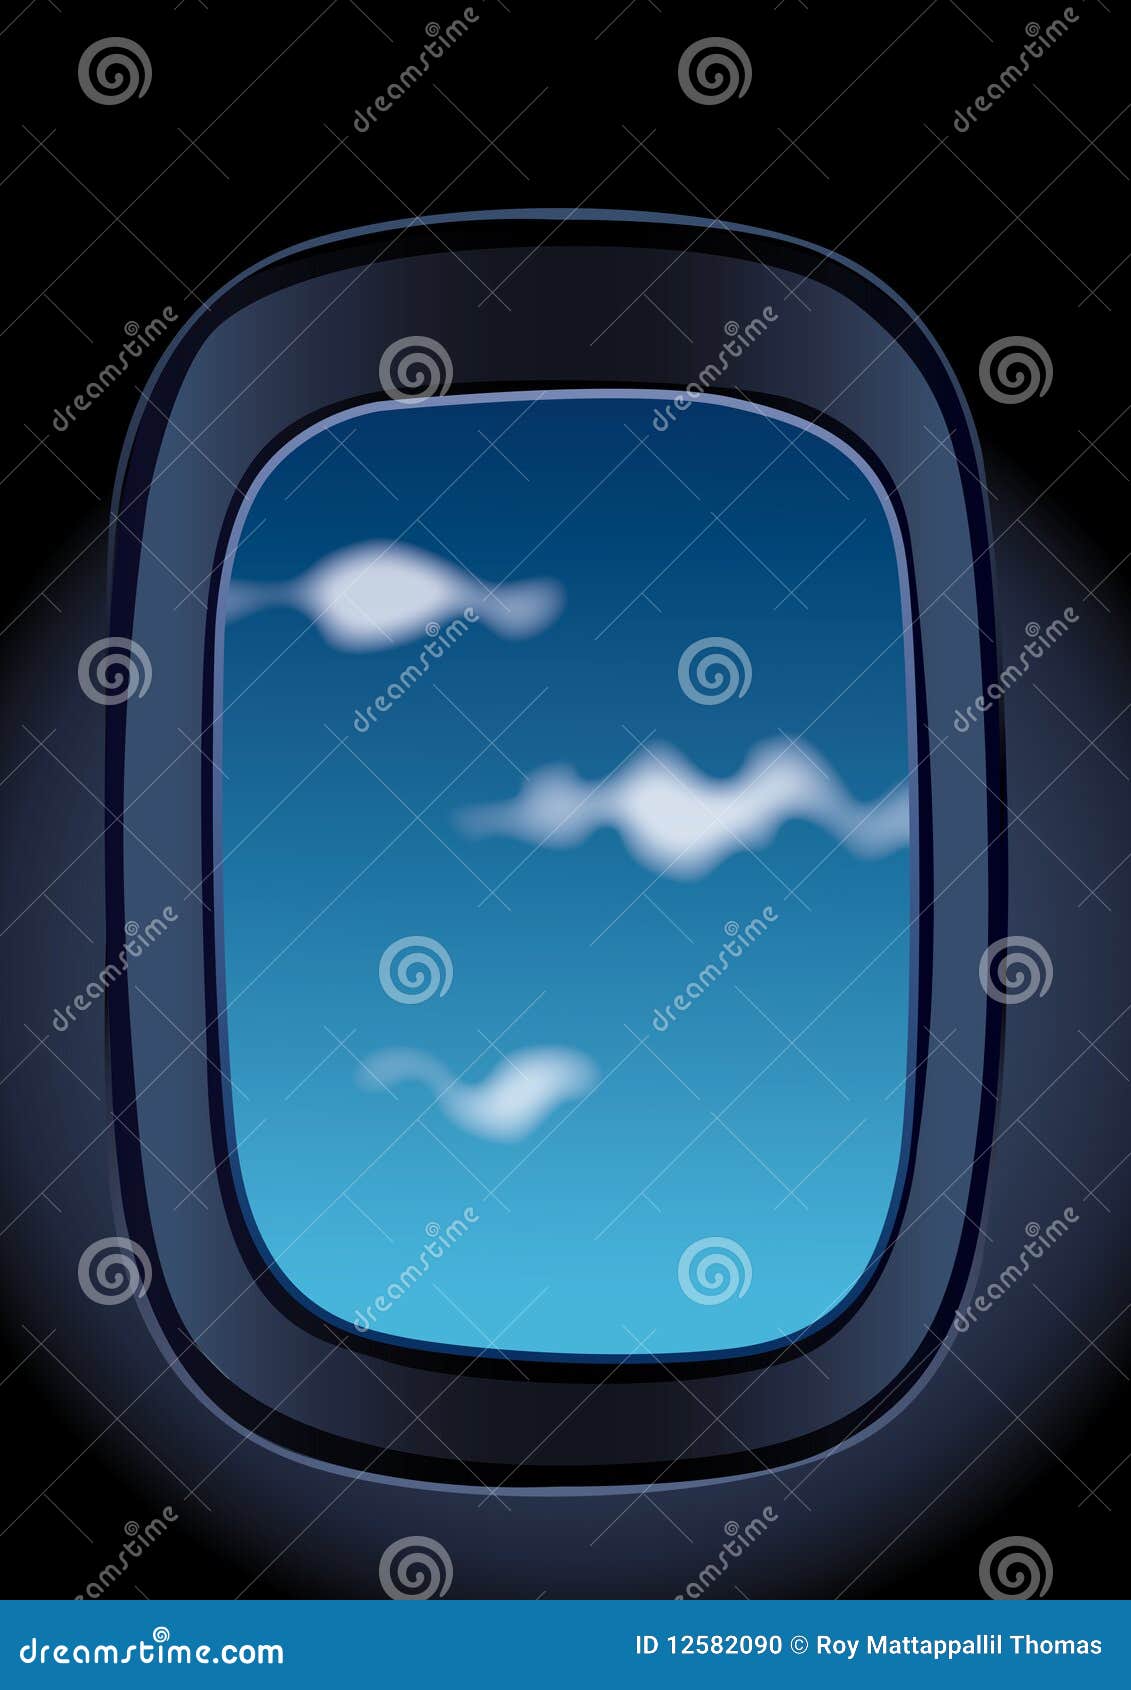 aeroplane window